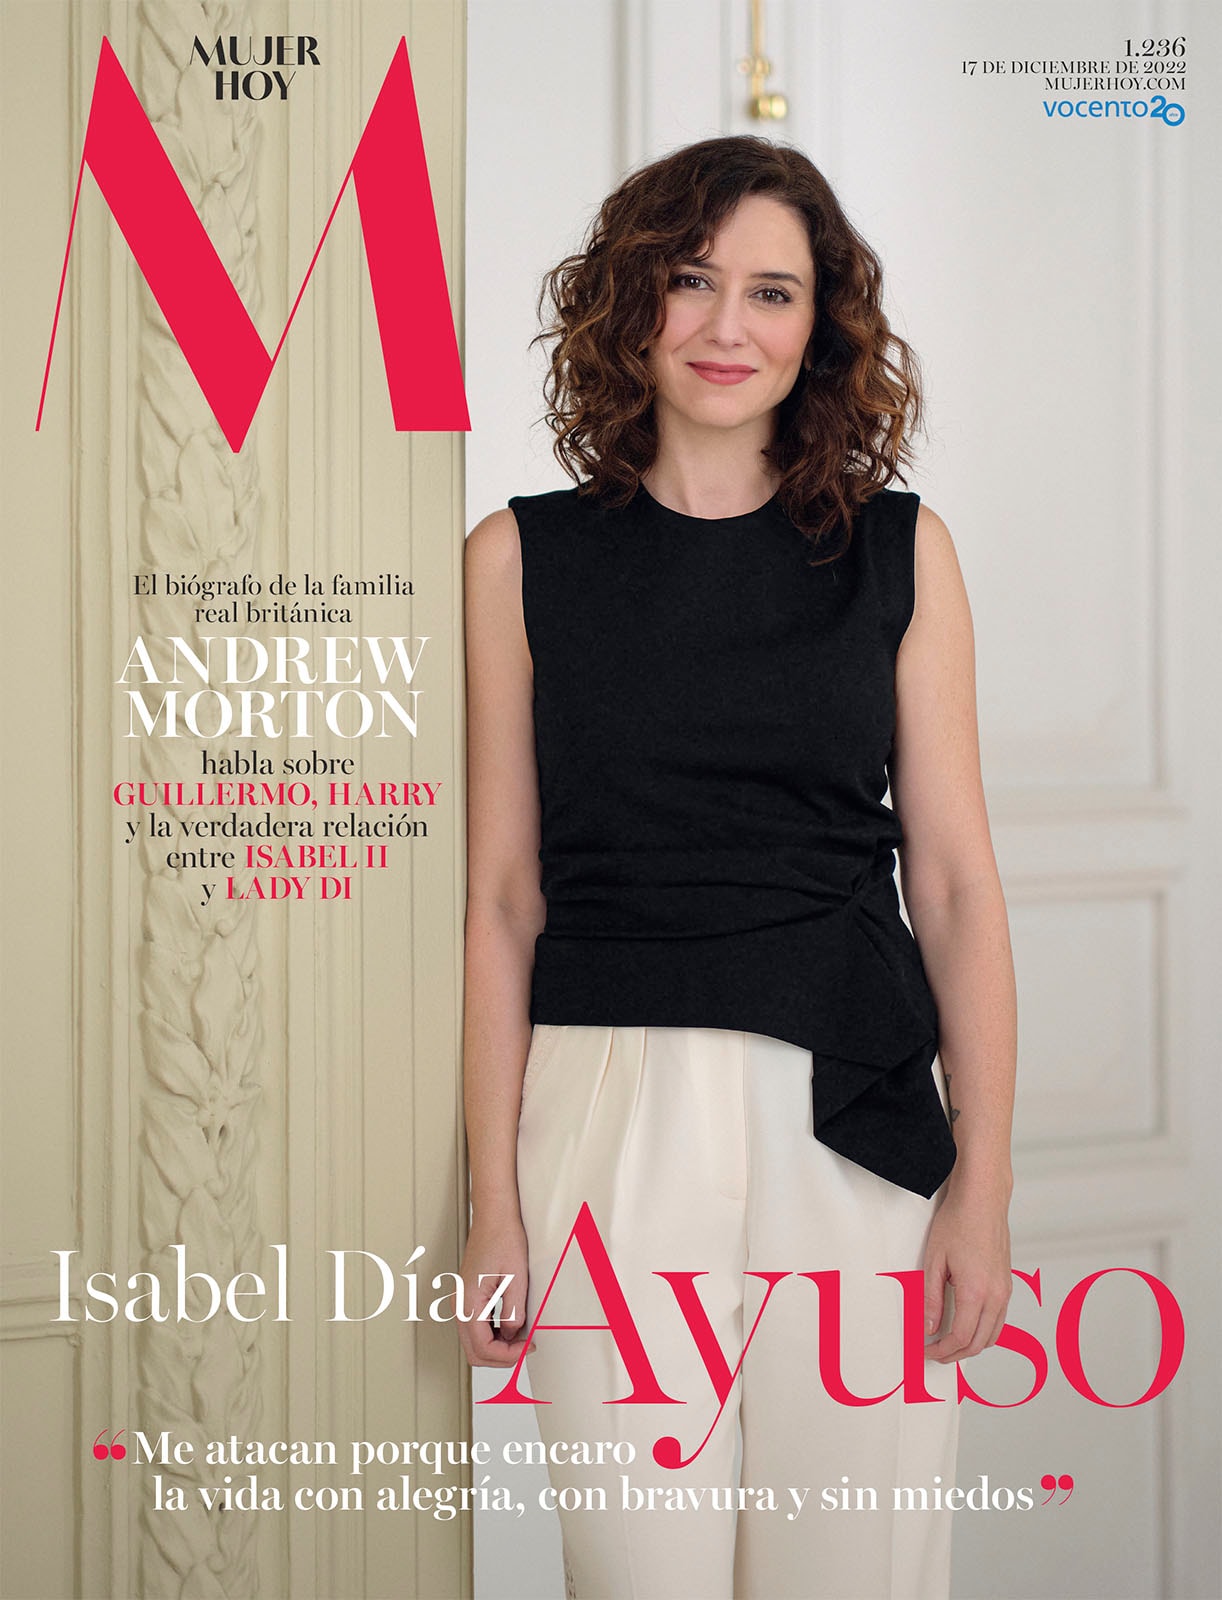 Este en Mujerhoy, Isabel Díaz Ayuso, presidenta de Comunidad de Madrid contesta a todo y a todos | Mujer Hoy